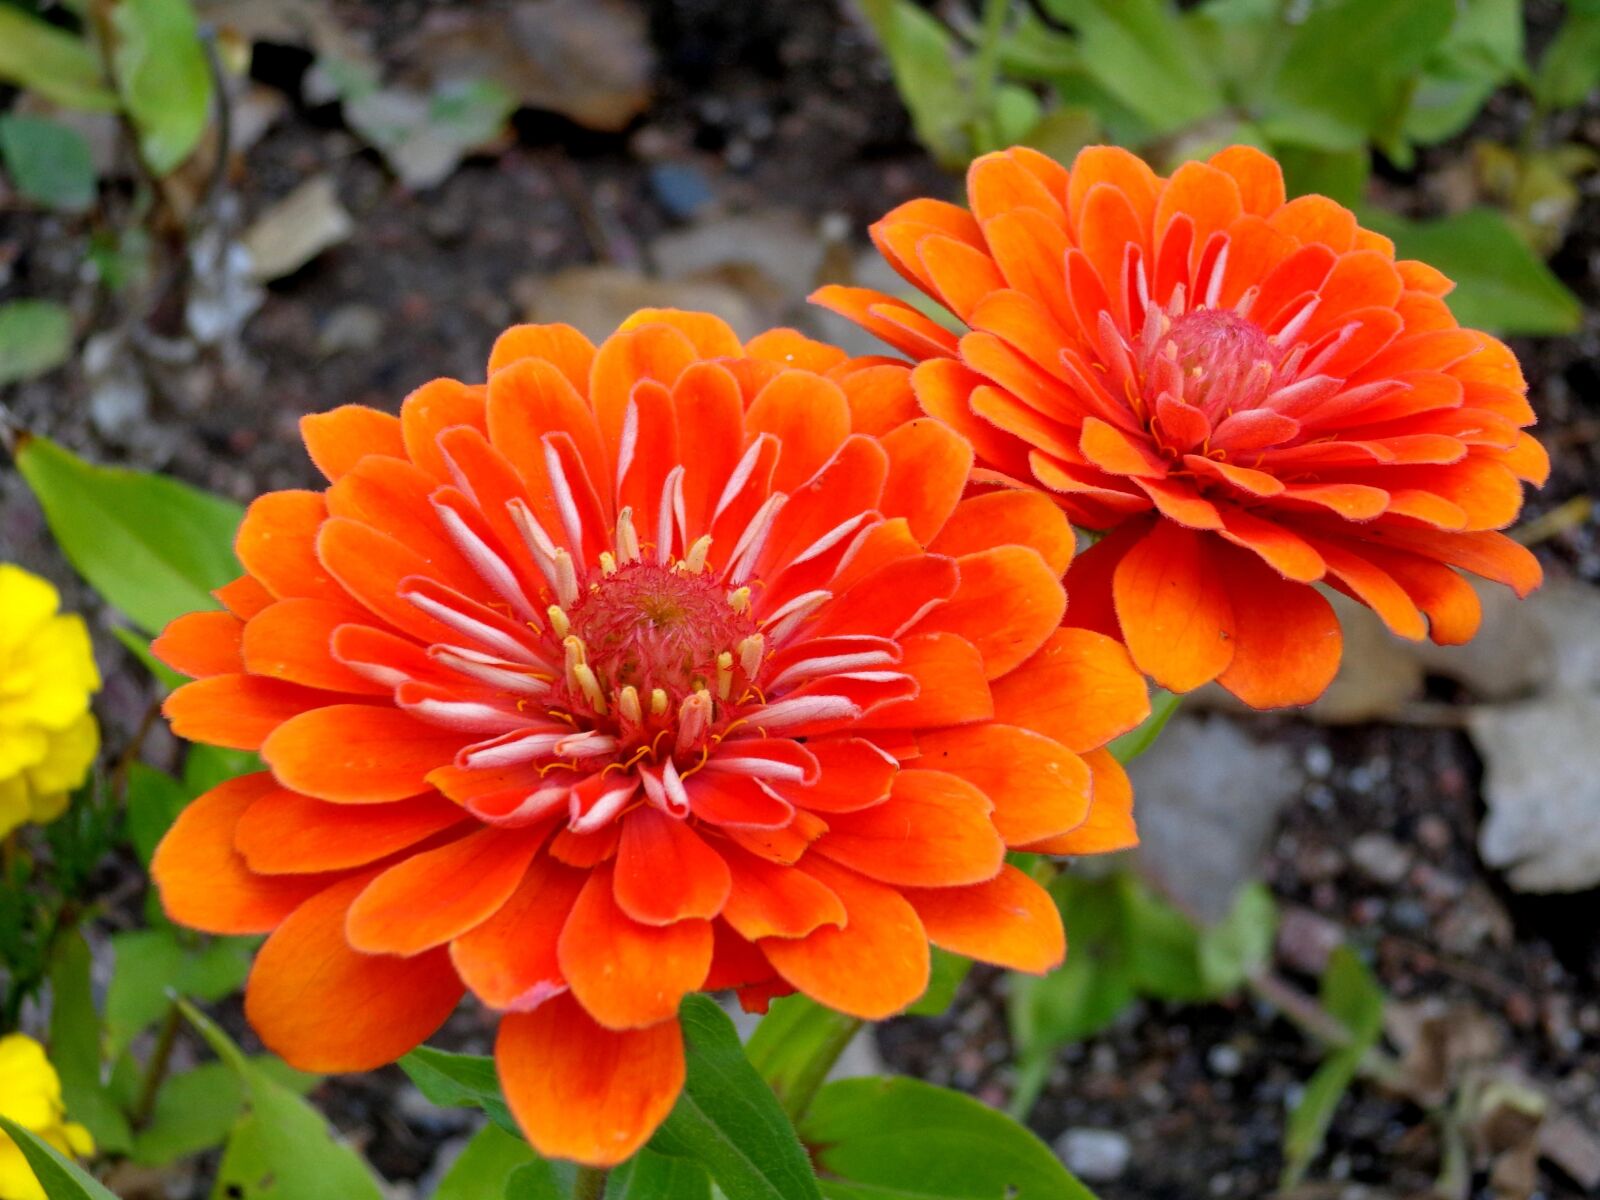 Sony DSC-W690 sample photo. "Orange flower, zinnia flowers" photography